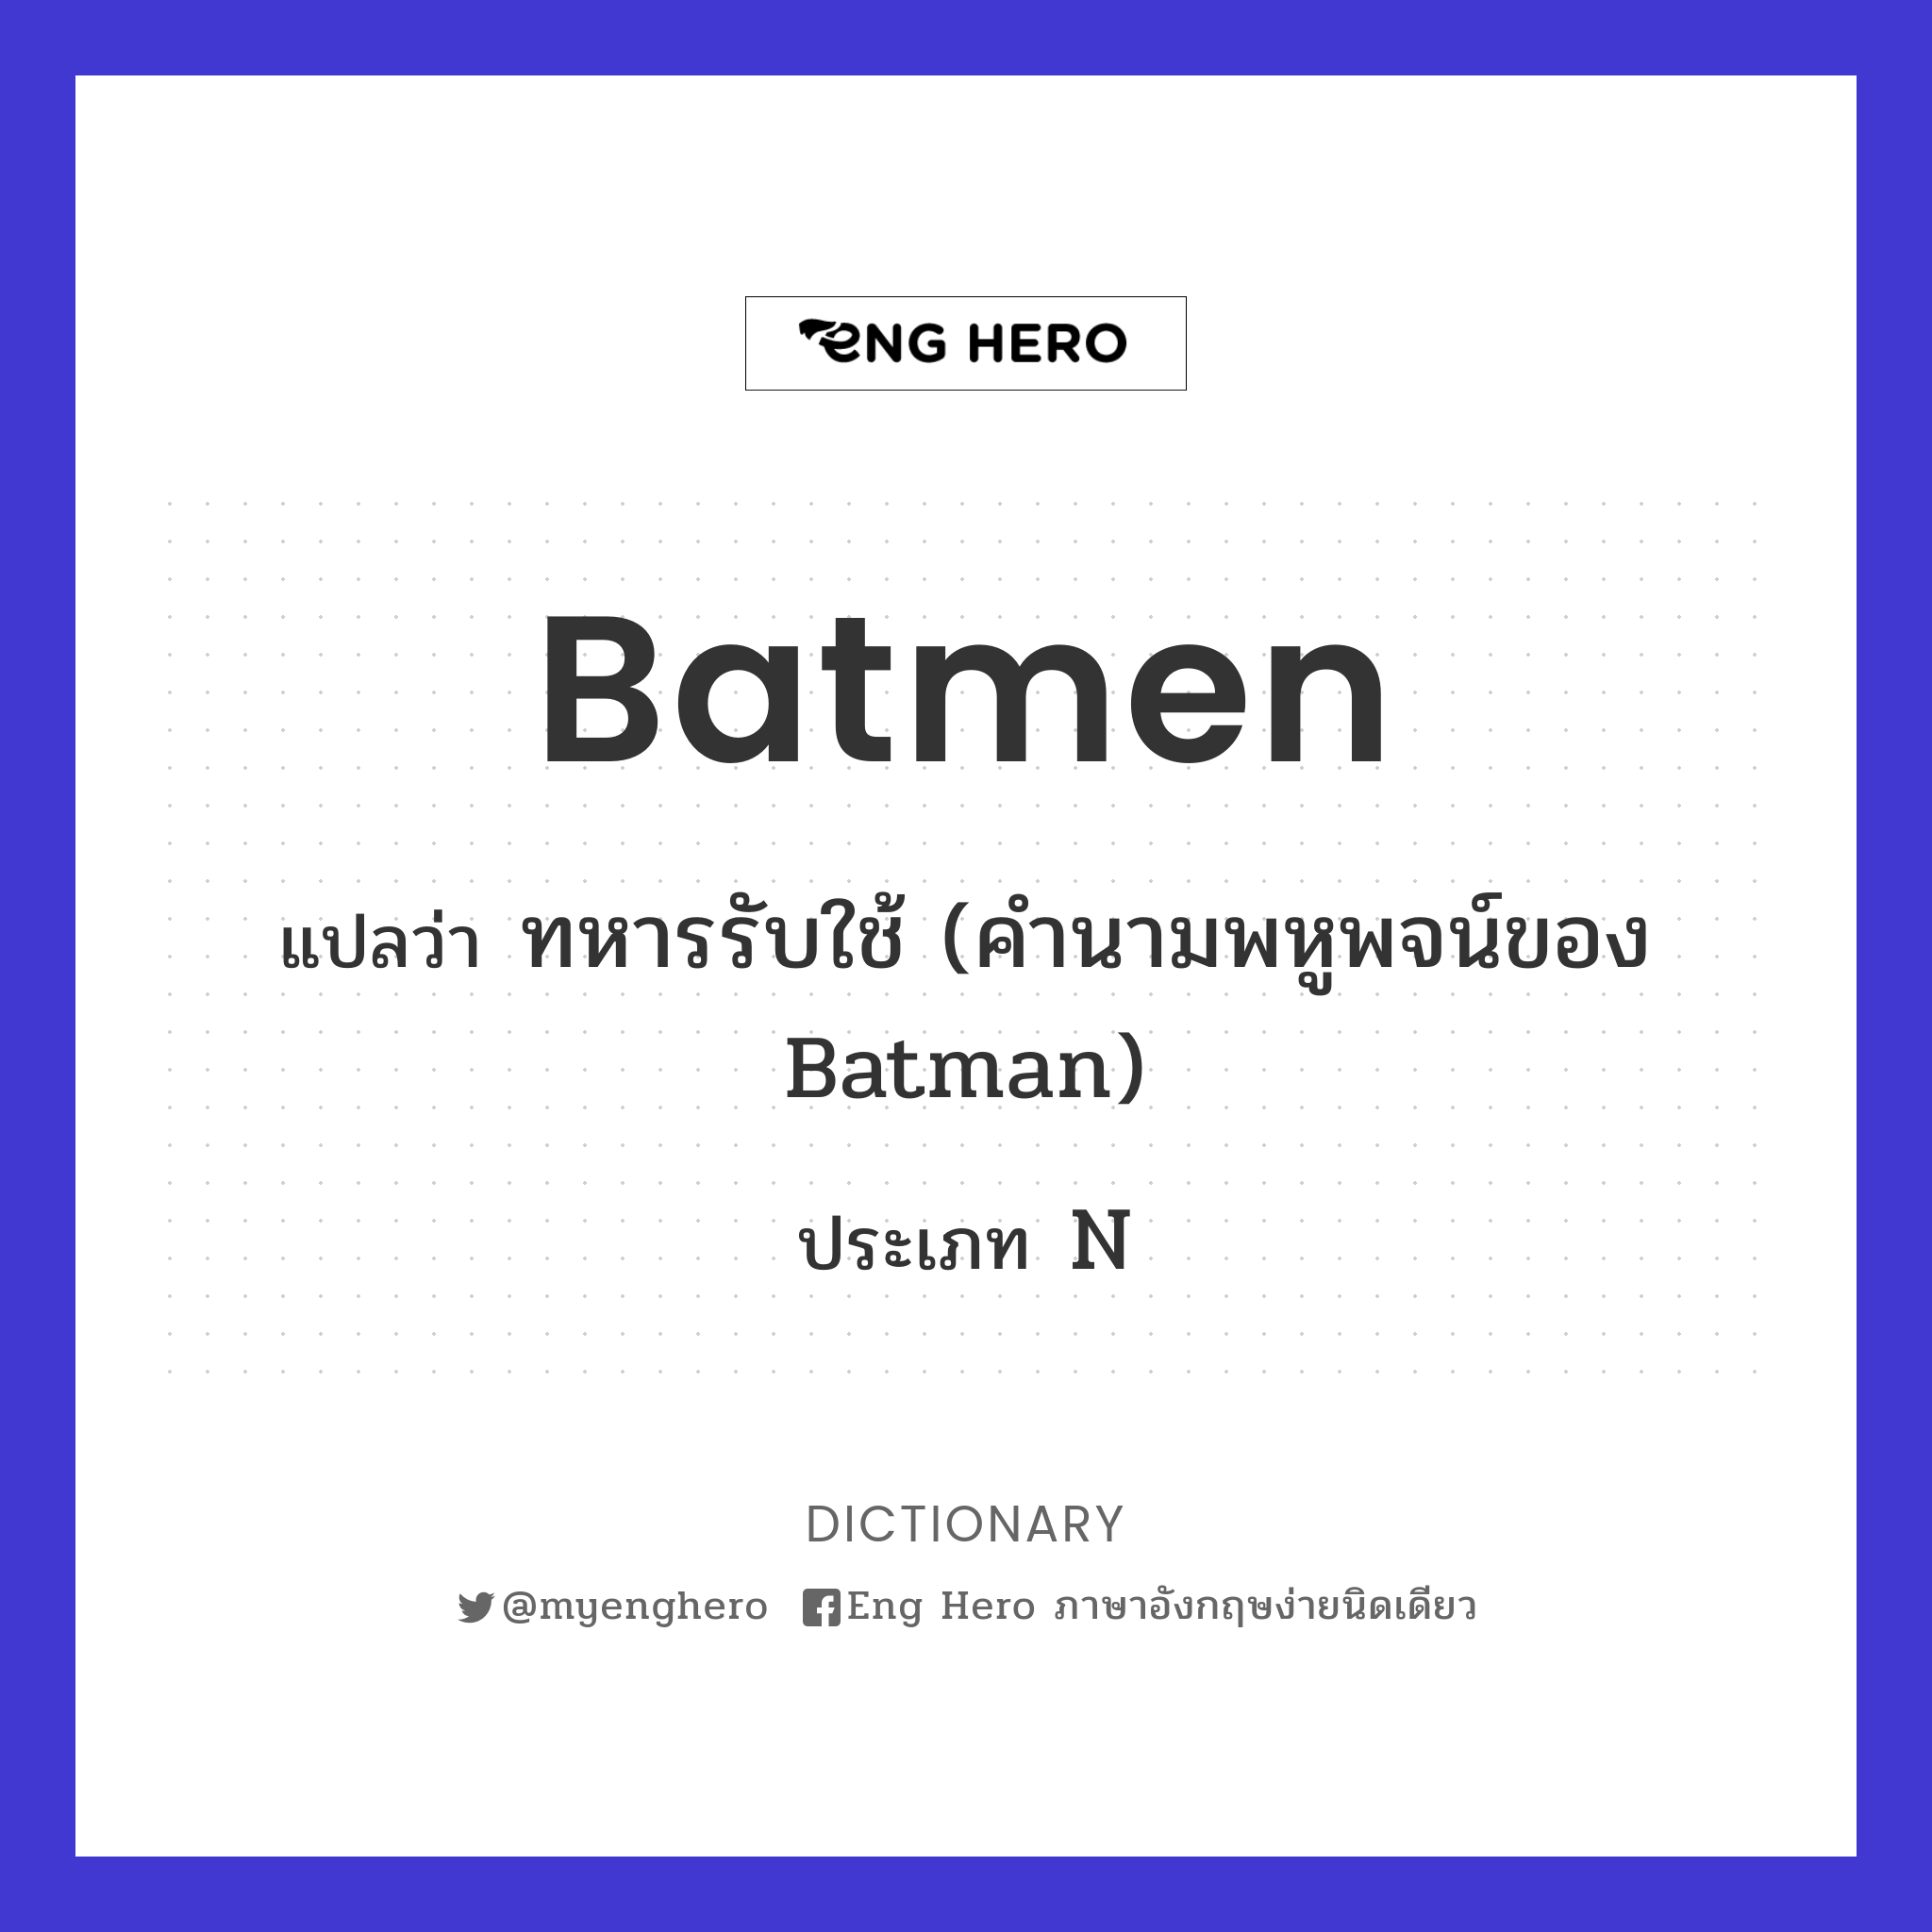 batmen